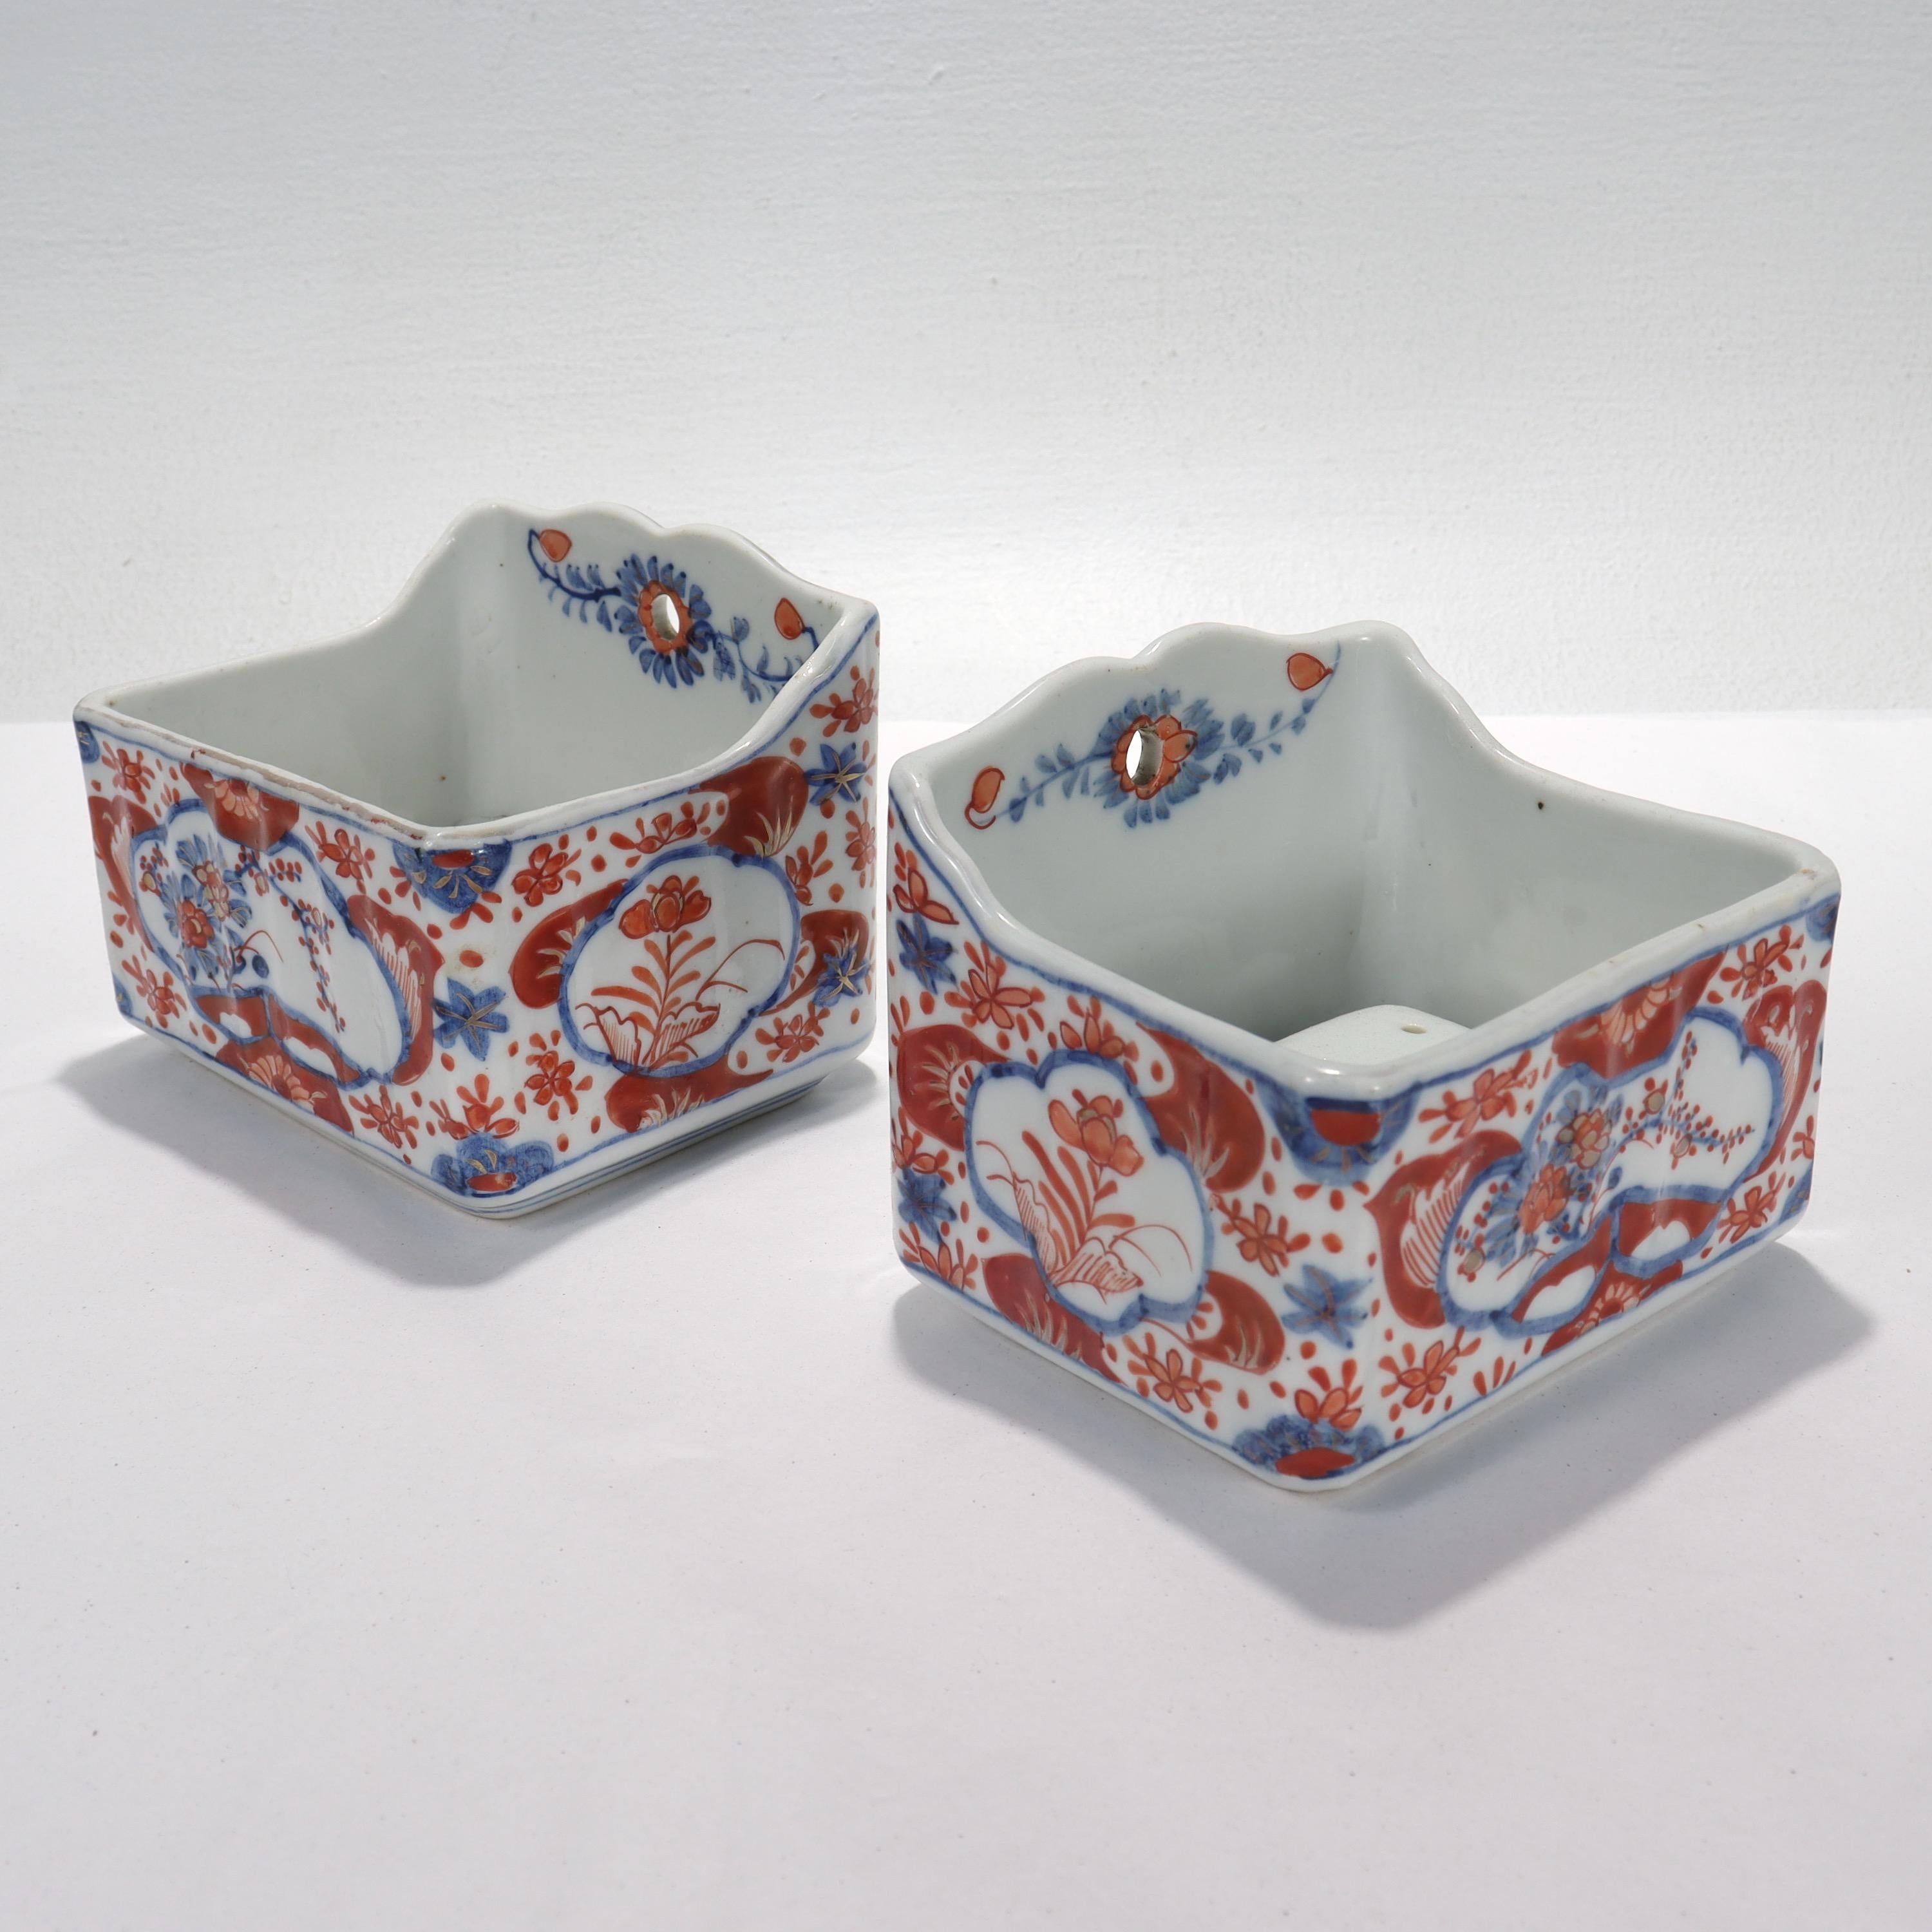 Ein Paar feiner antiker Seifenschalen aus japanischem Imari-Porzellan

Durchgehend mit floralen Verzierungen in Unterglasurblau, eisenroter Farbe und Vergoldung geschmückt.

Jeweils mit einem Sieb im Inneren der Schale.

Einfach ein tolles Paar